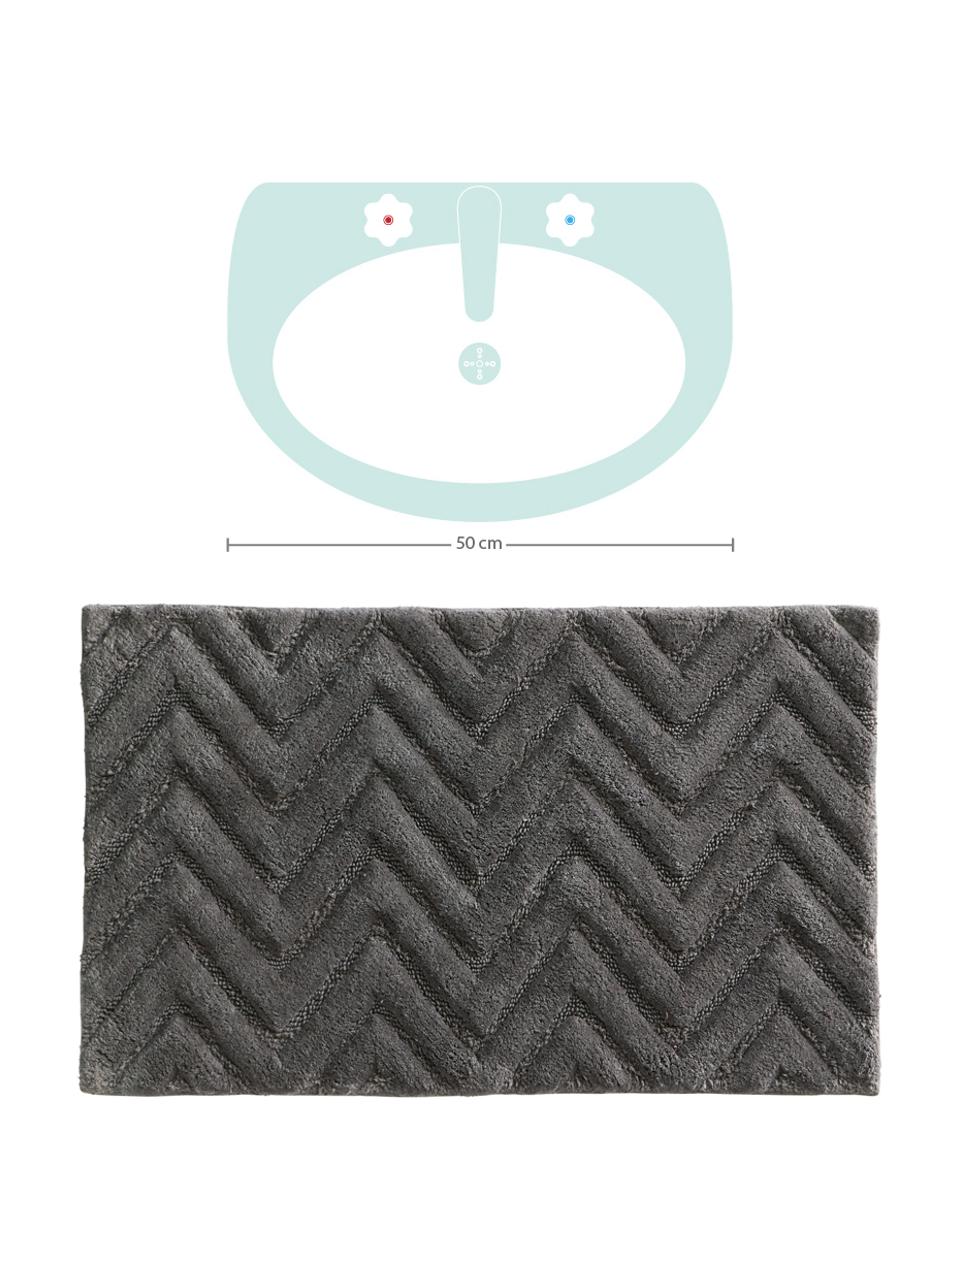 Puszysty dywanik łazienkowy Arild, 100% bawełna, Ciemny szary, S 50 x D 80 cm